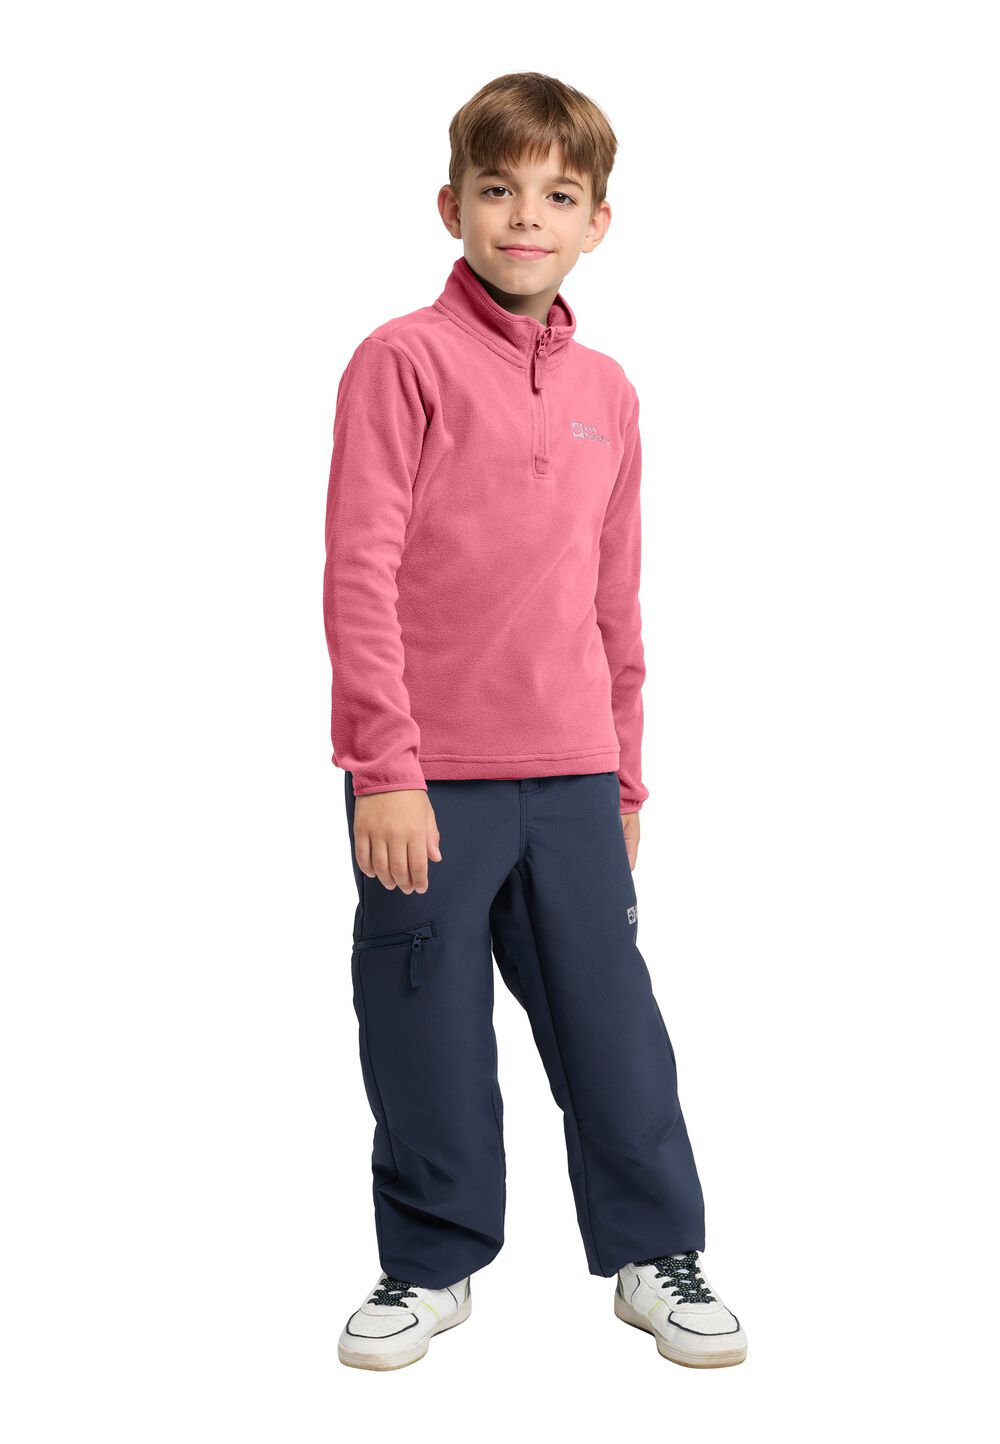 Jack Wolfskin Taunus Halfzip Kids Fleece trui Kinderen 92 soft pink soft pink